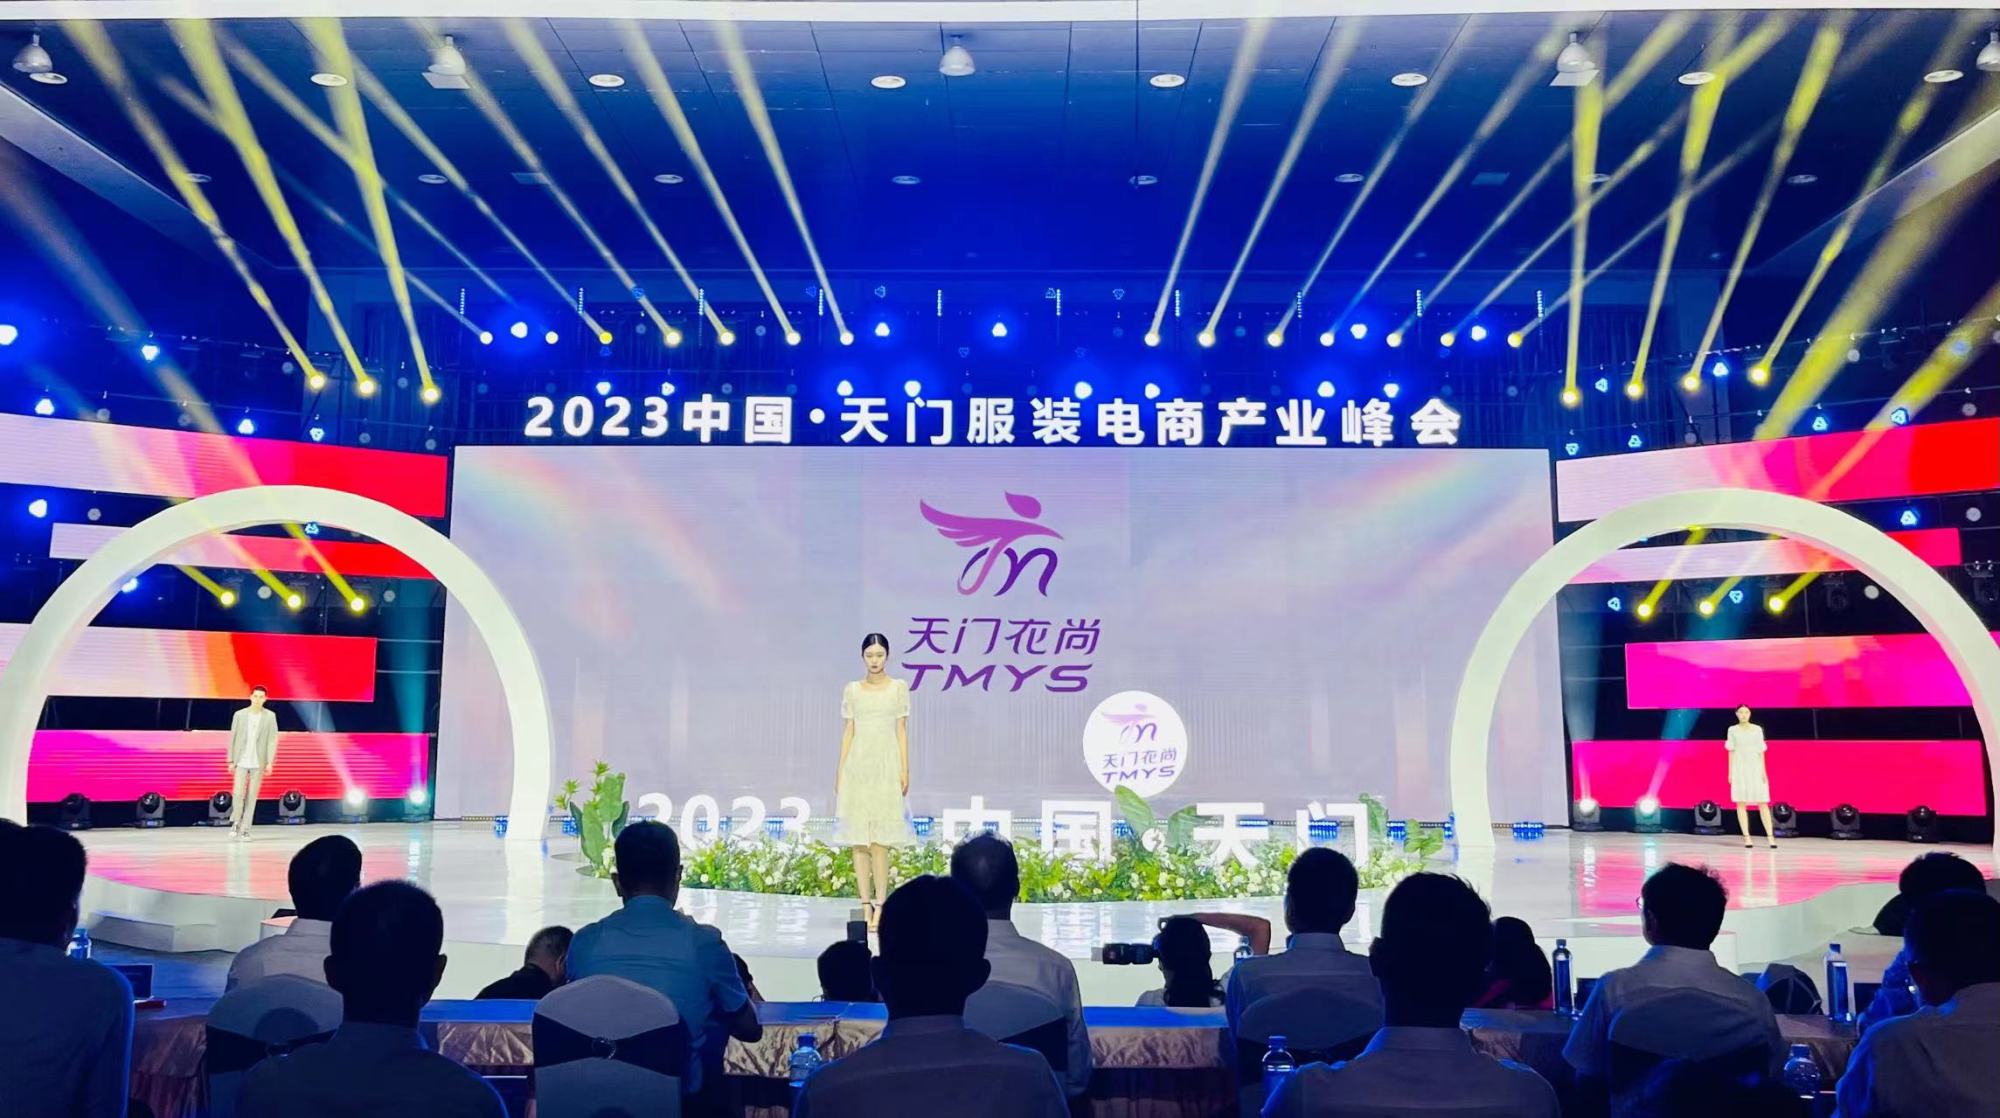 湖北省天门市发布服装电商区域公用品牌